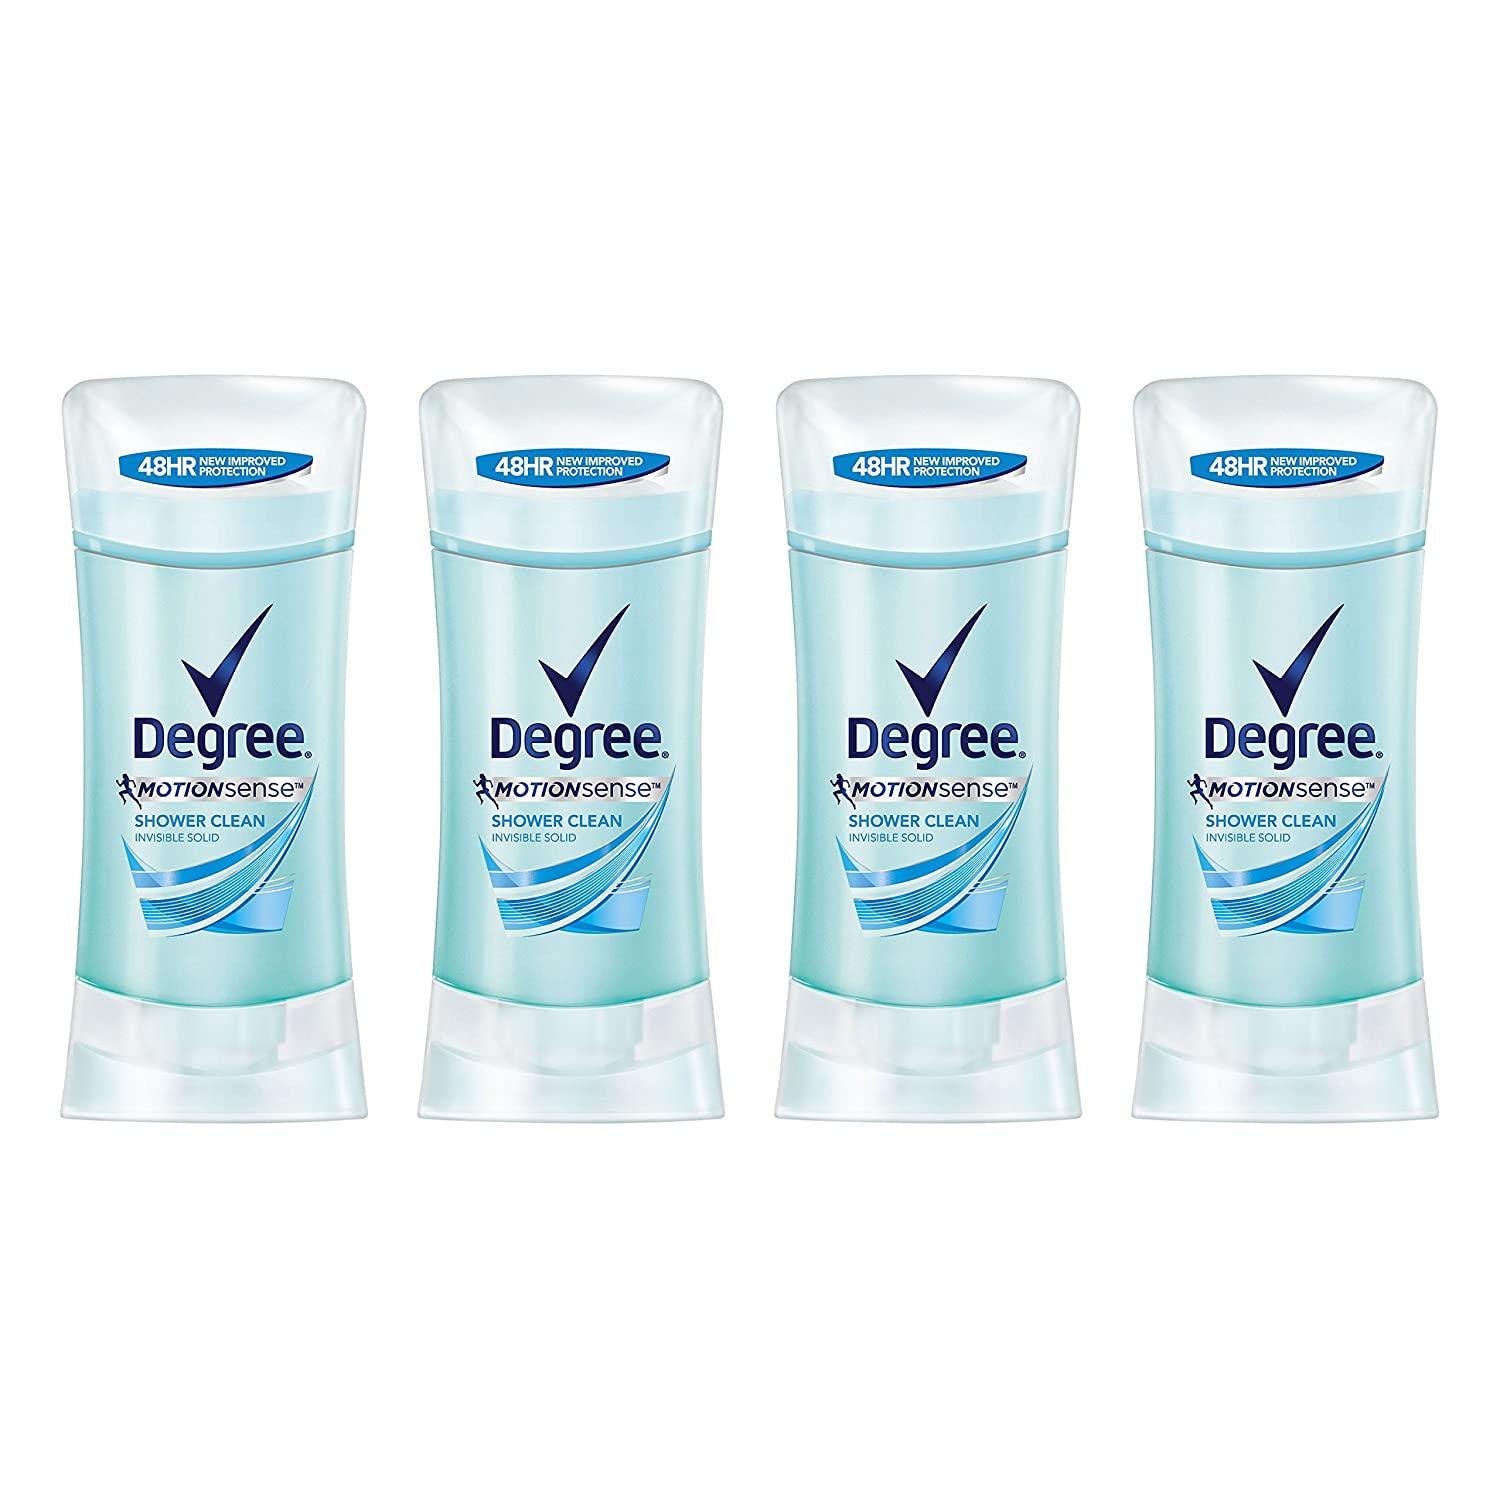 4 Degree MotionSense Antiperspirant Deodorants for $8.53 Shipped